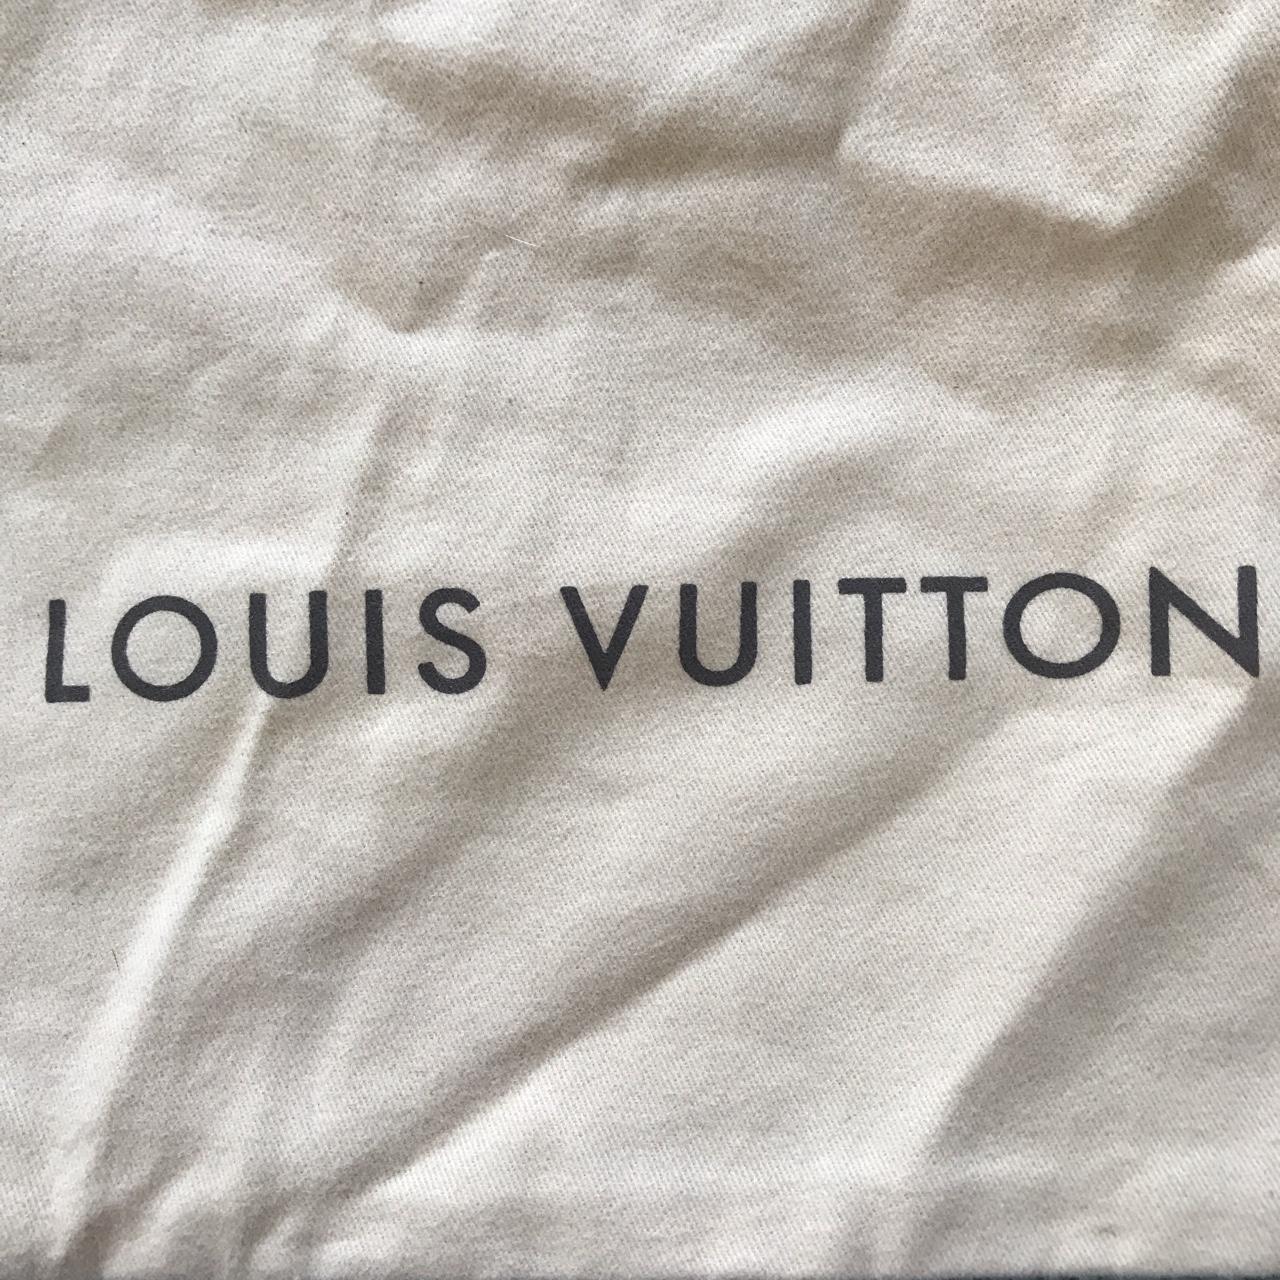 LOUIS VUITTON dust bag shoe approx. 15.5 X 9